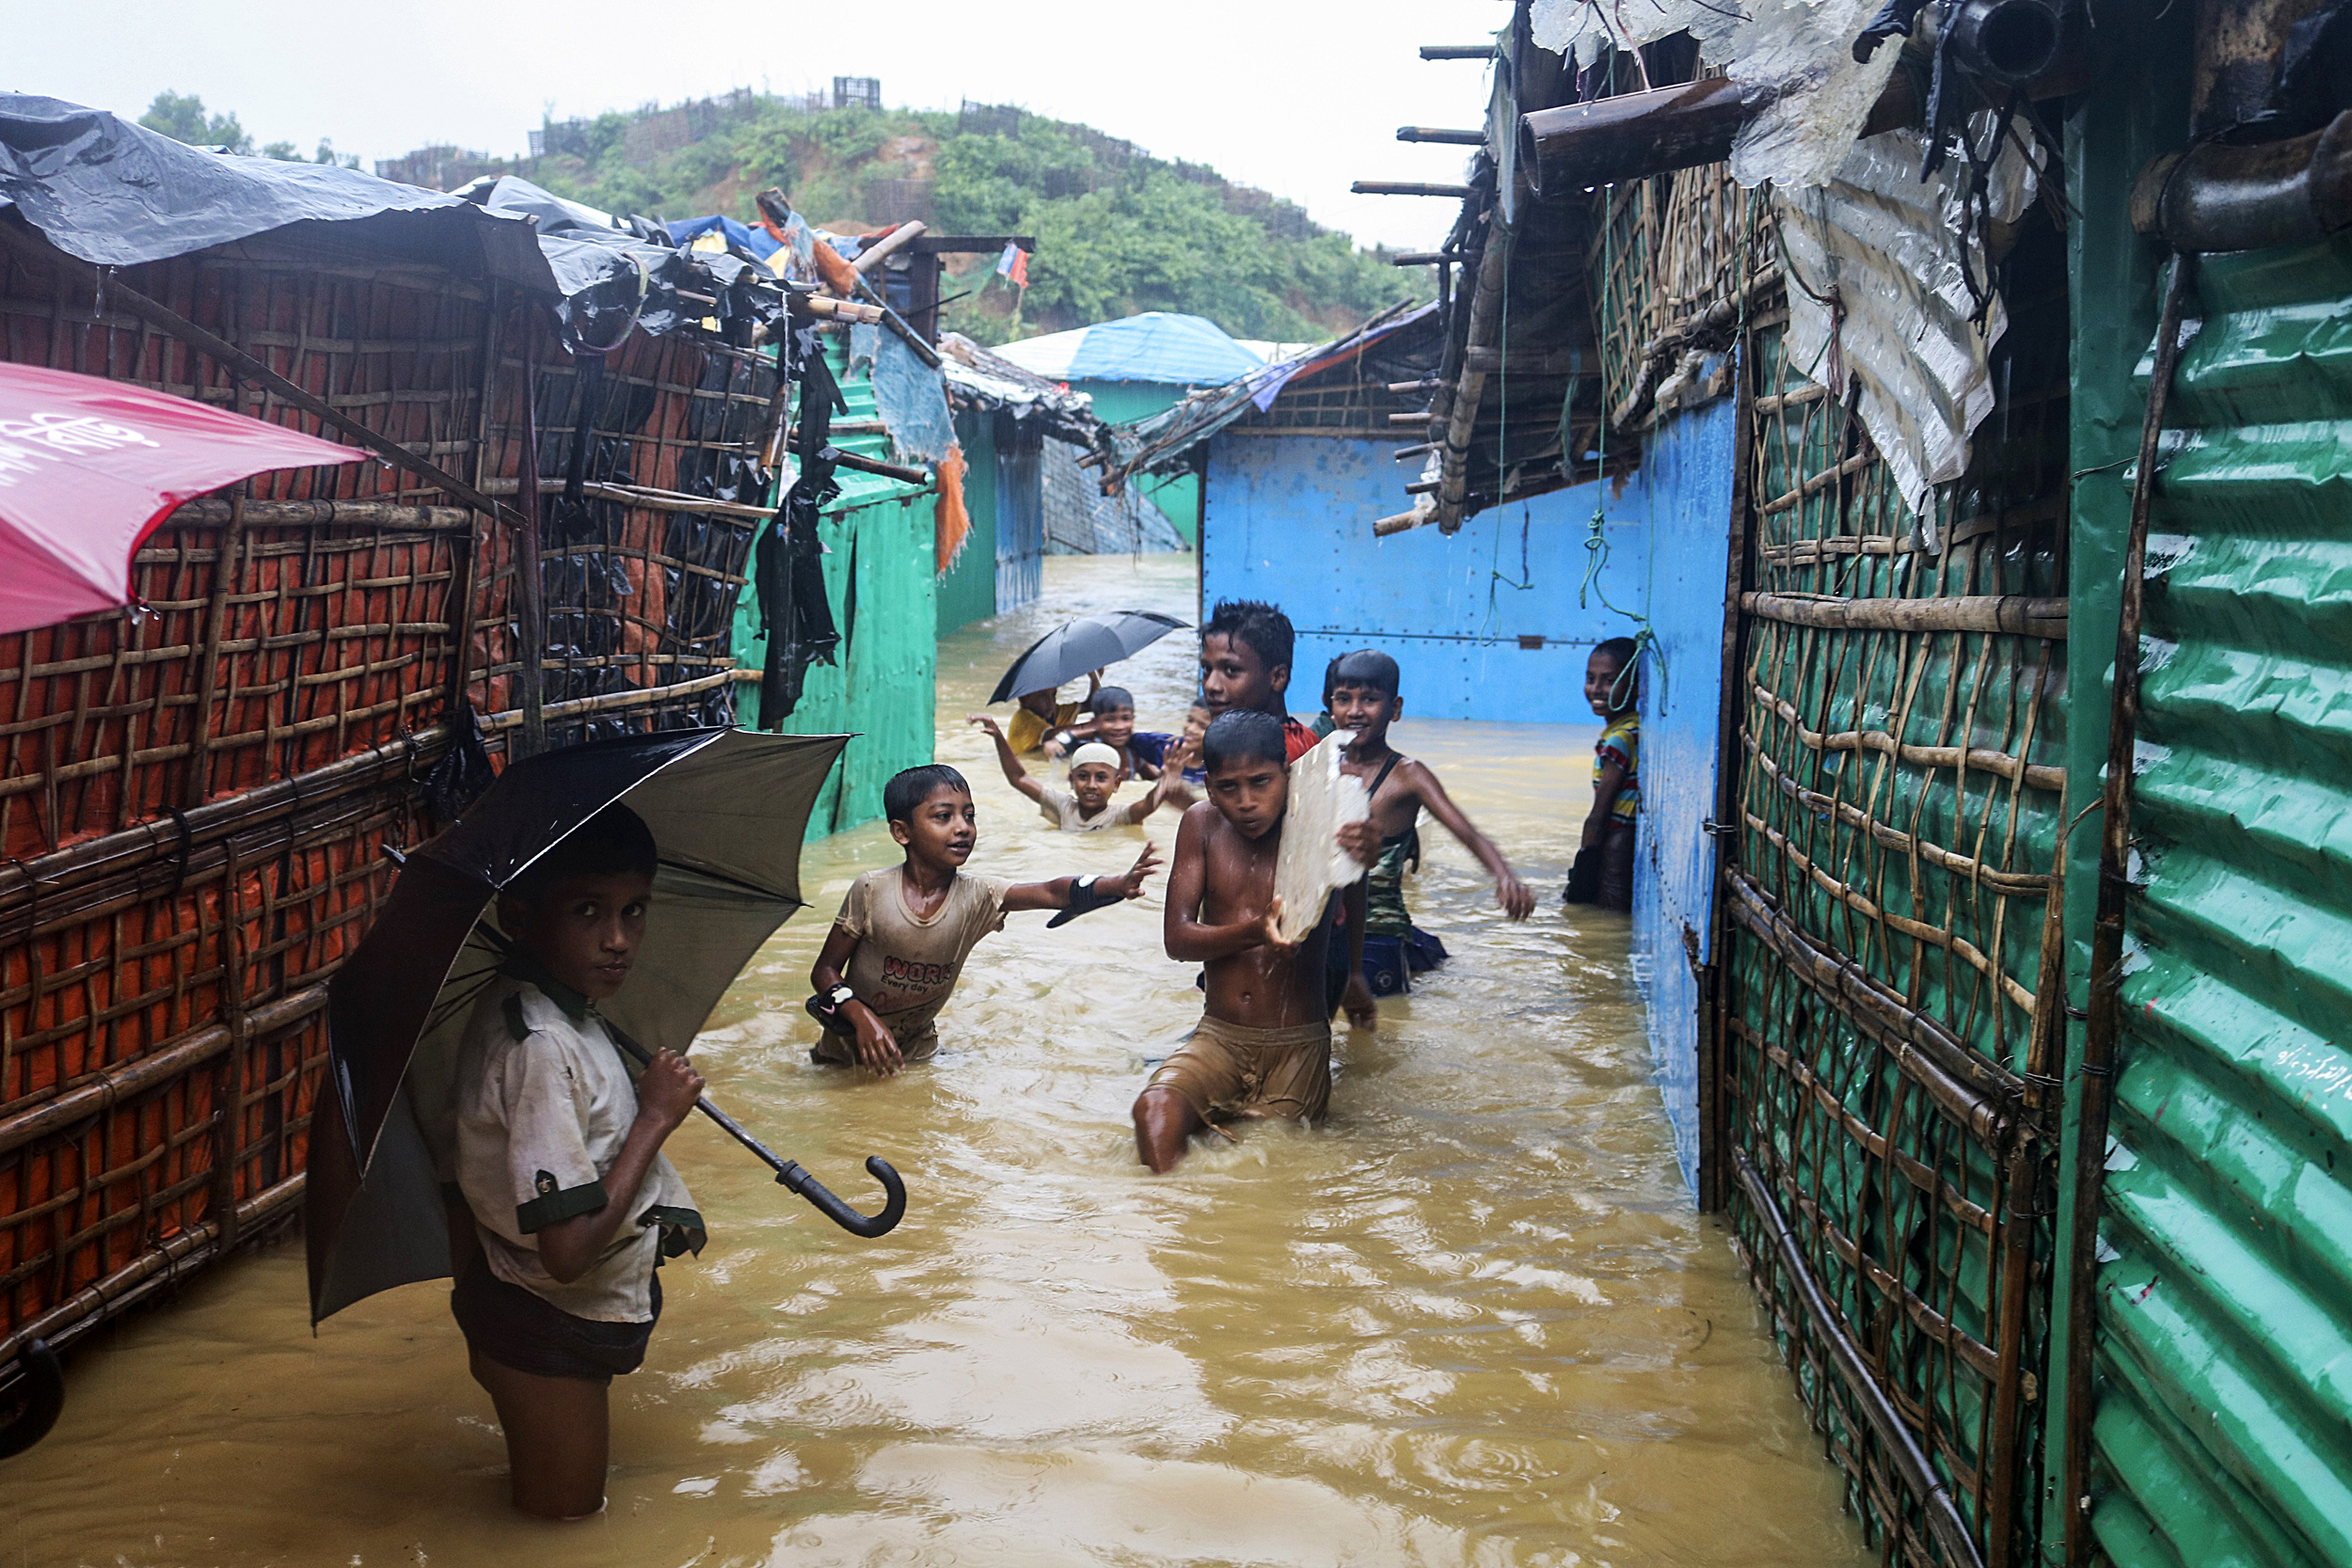 UNICEF: Over 1.5 Million Children at Risk as Devastating Floods Hit Bangladesh